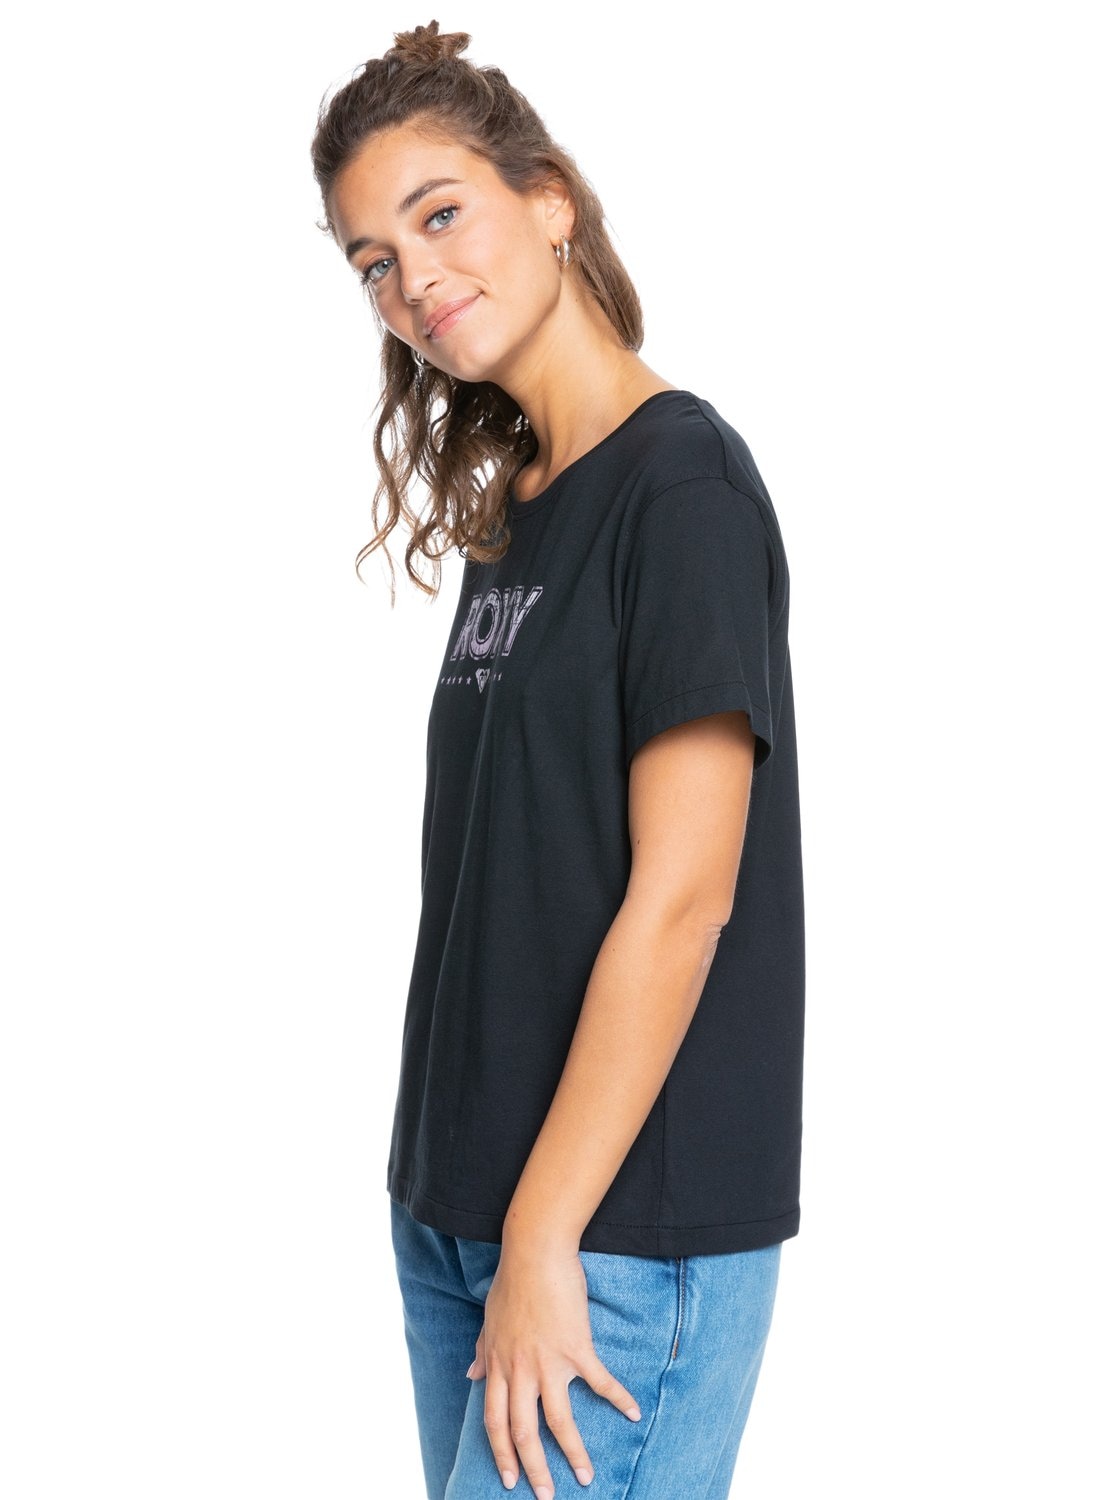 Schweiz Roxy Jelmoli-Versand »Sweet kaufen T-Shirt bei Evening« online